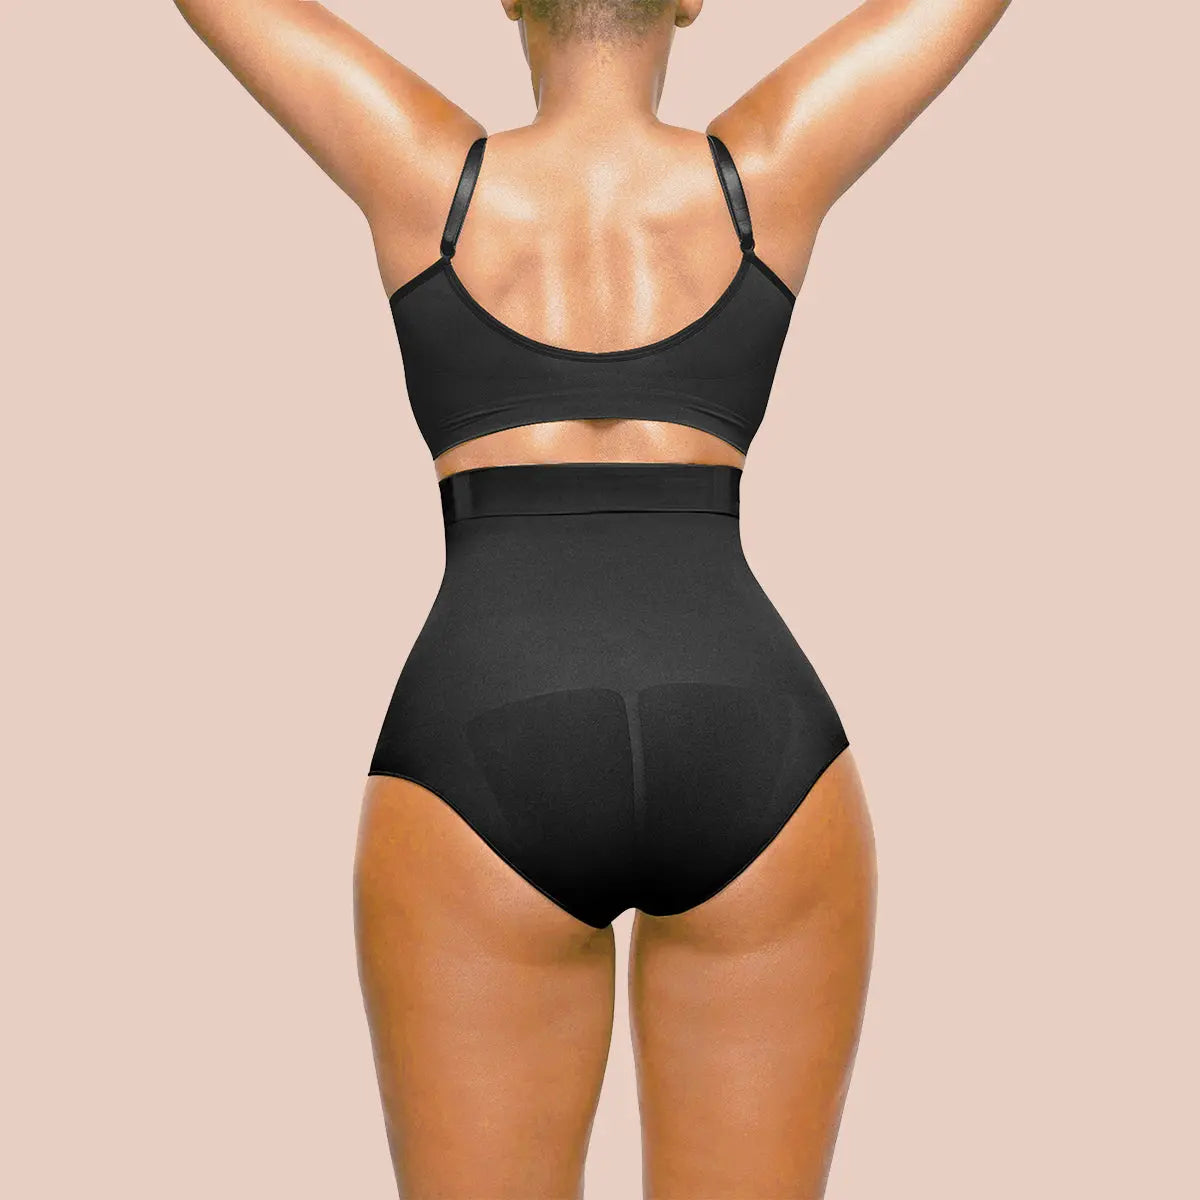 Women High Waist Body Shaper Butt Lifter Shapewear Slimming Underwear